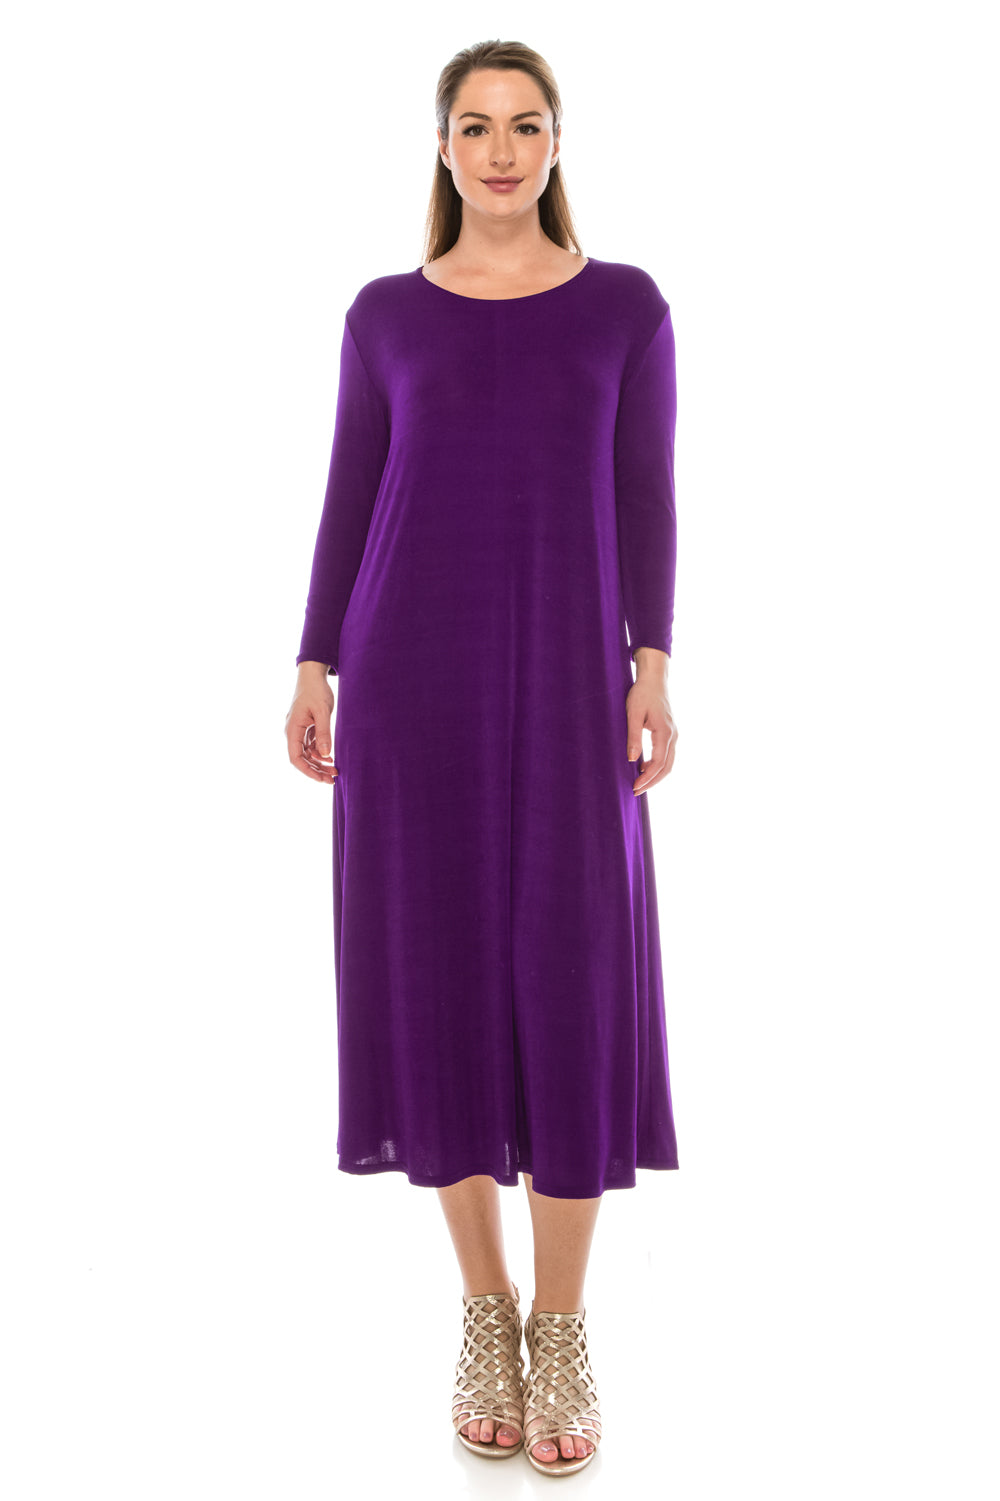 Jostar Women's Stretchy Long Dress QS, 702BN-Q - Jostar Online